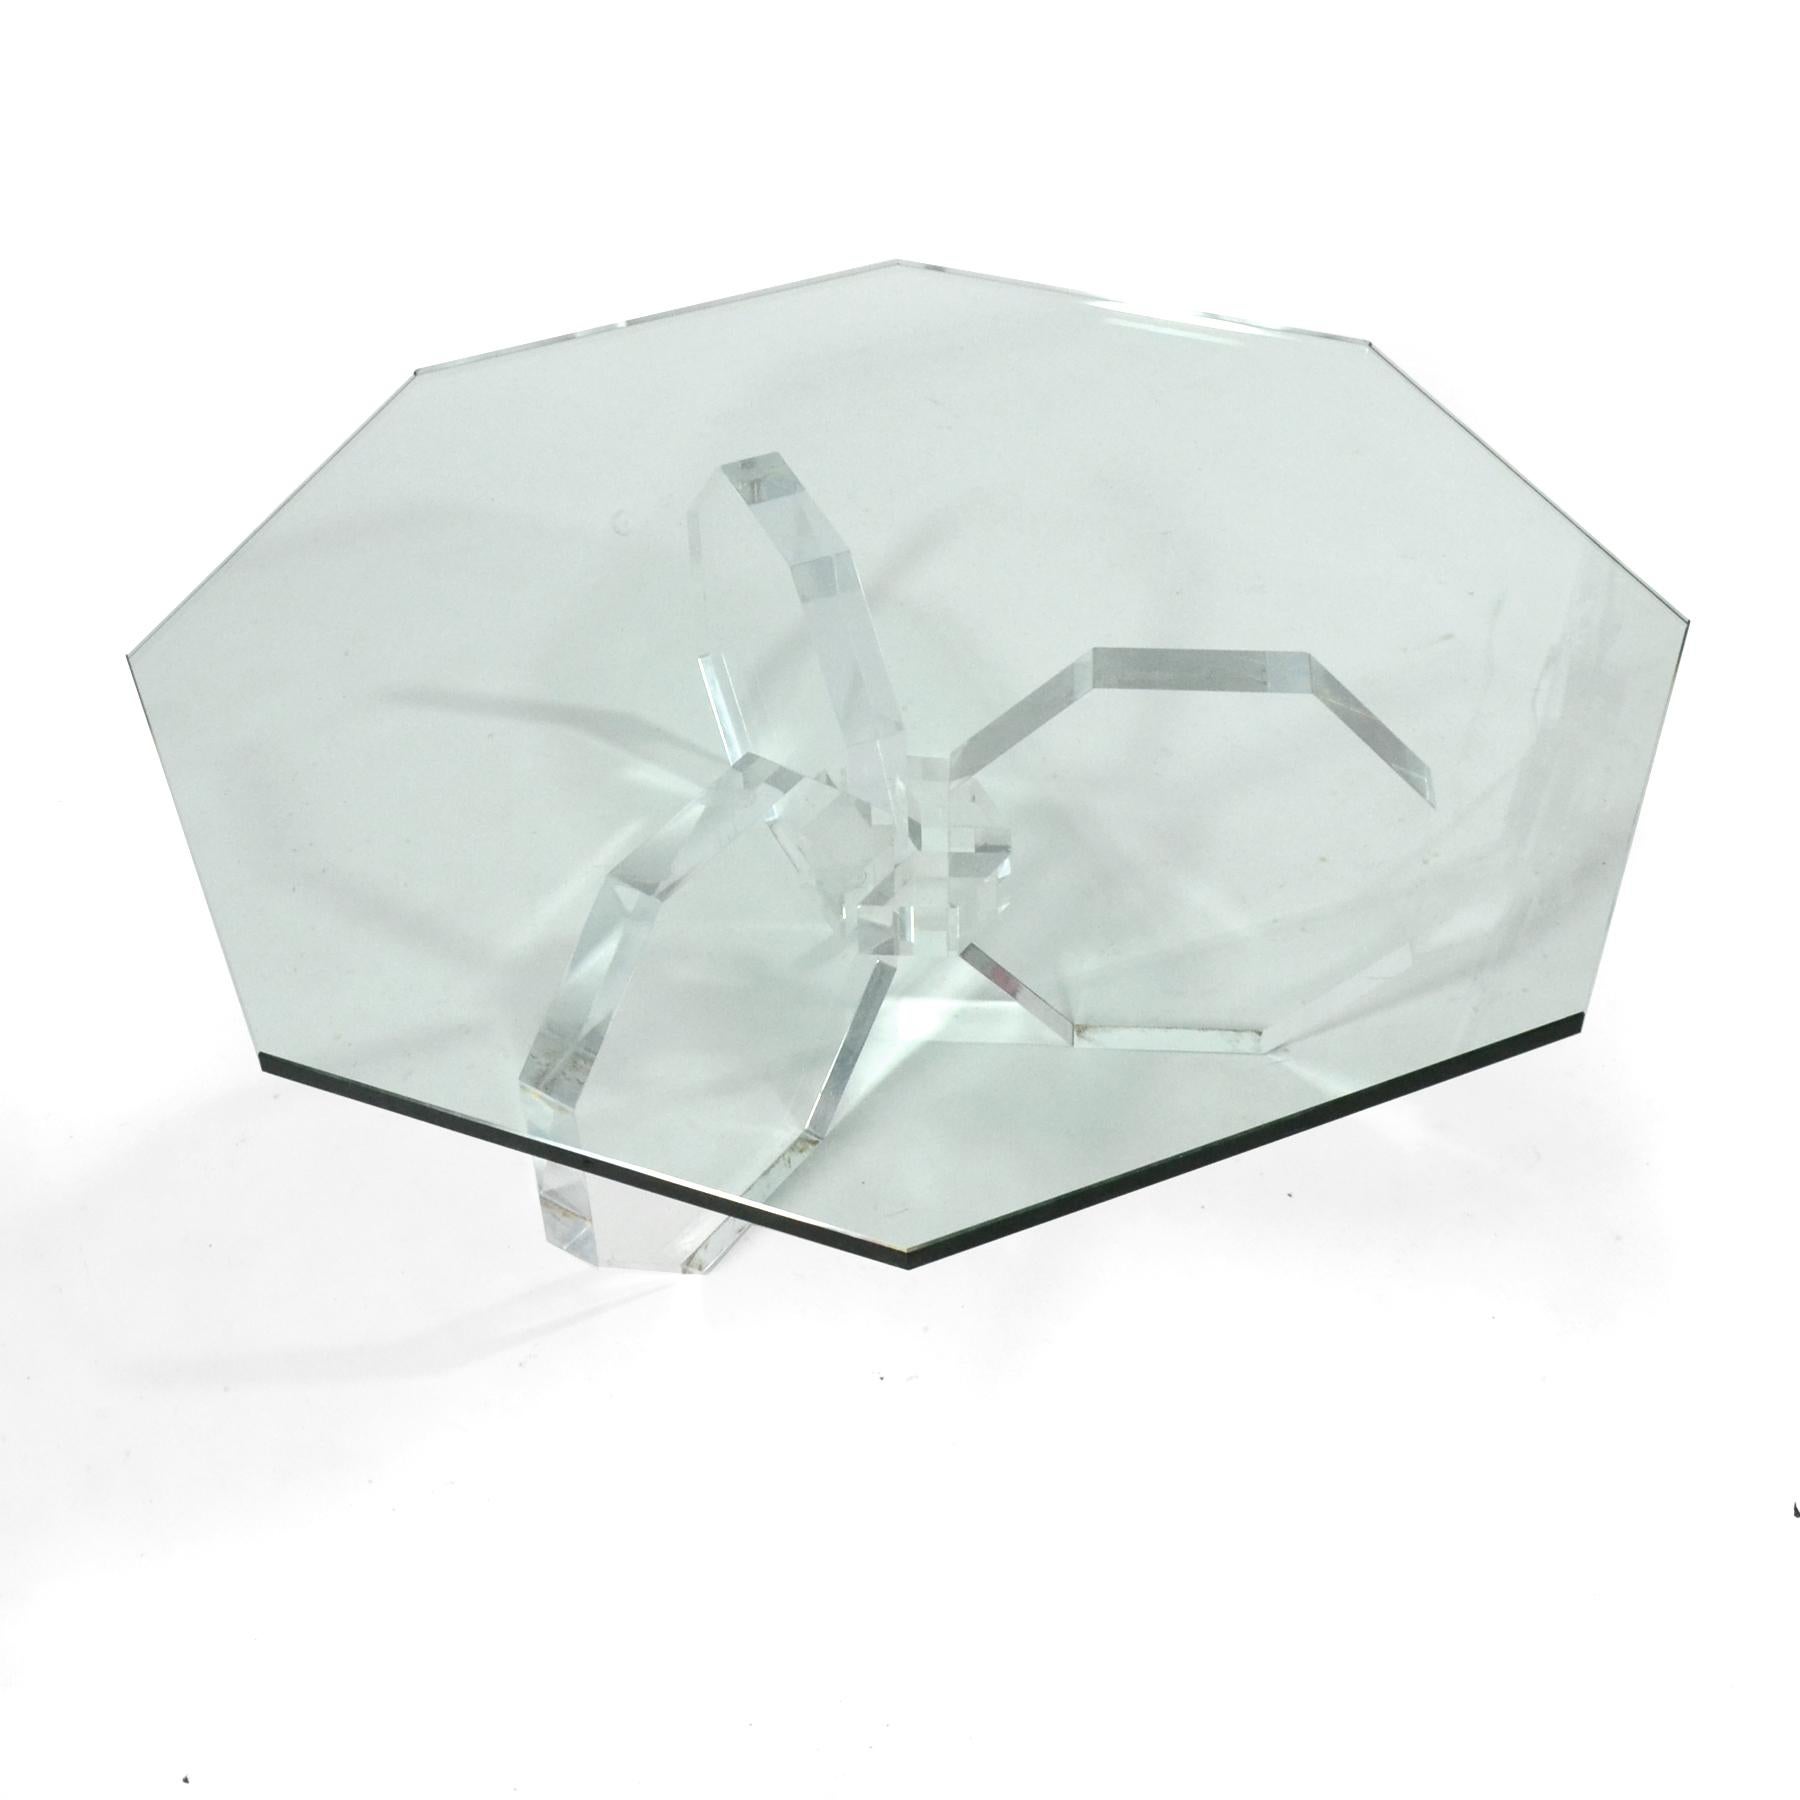 Cette table basse étonnante possède une base à trois pieds en acrylique qui fait écho à la forme octogonale du plateau en verre.